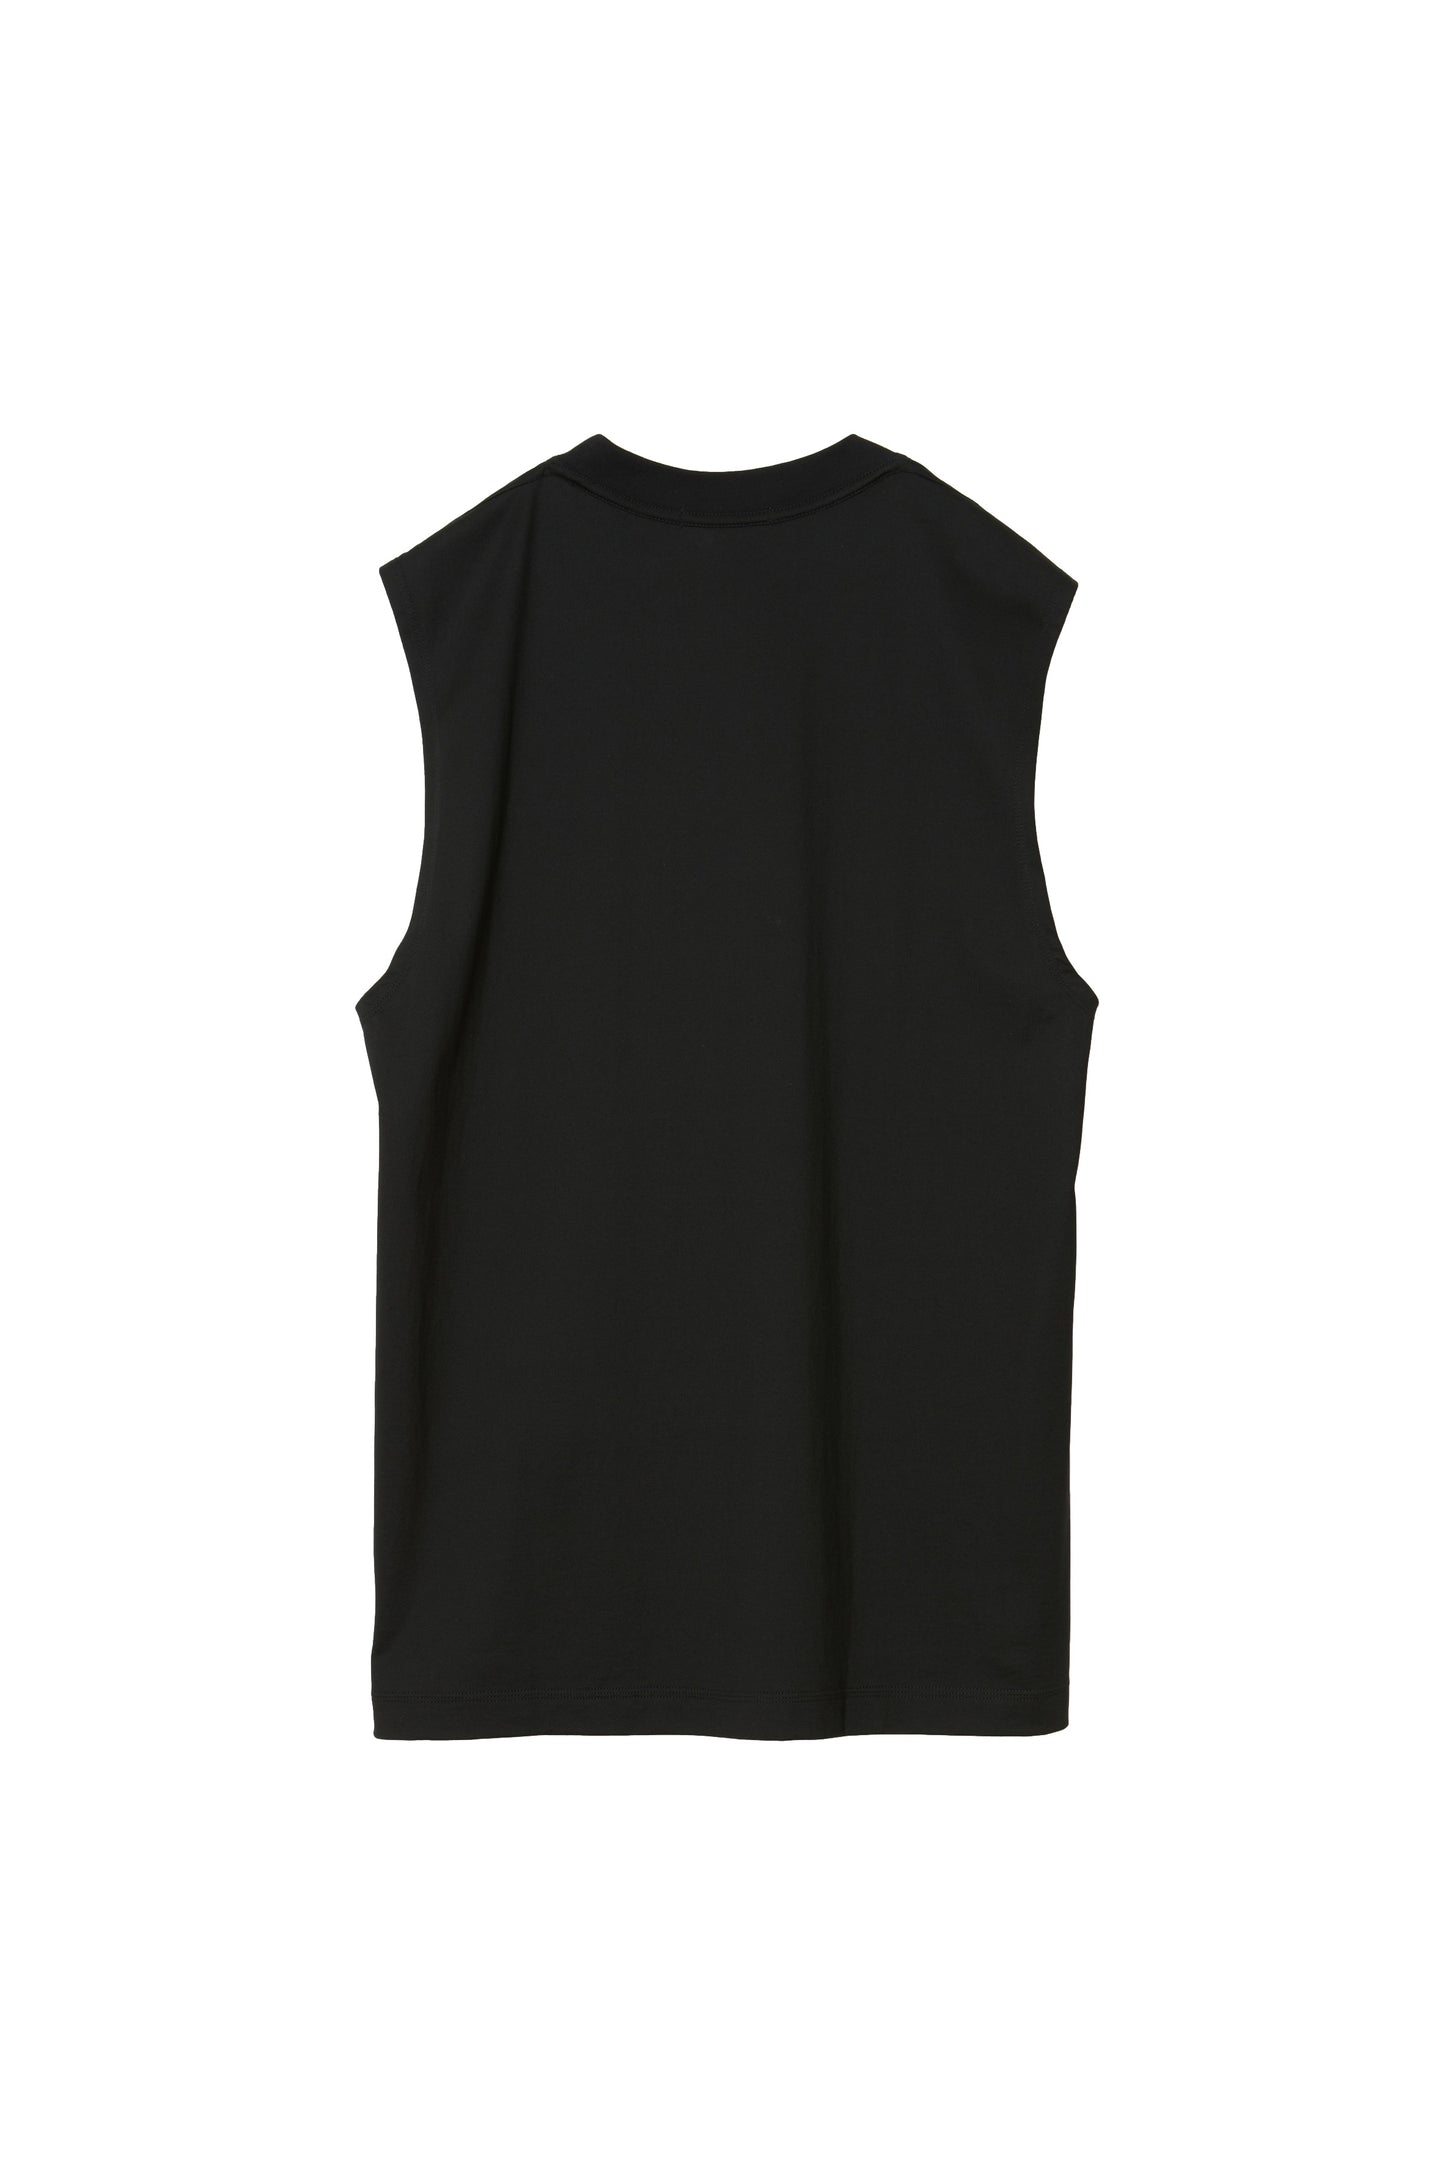 MATSUFUJI / Sleeveless Shirt “BLACK”